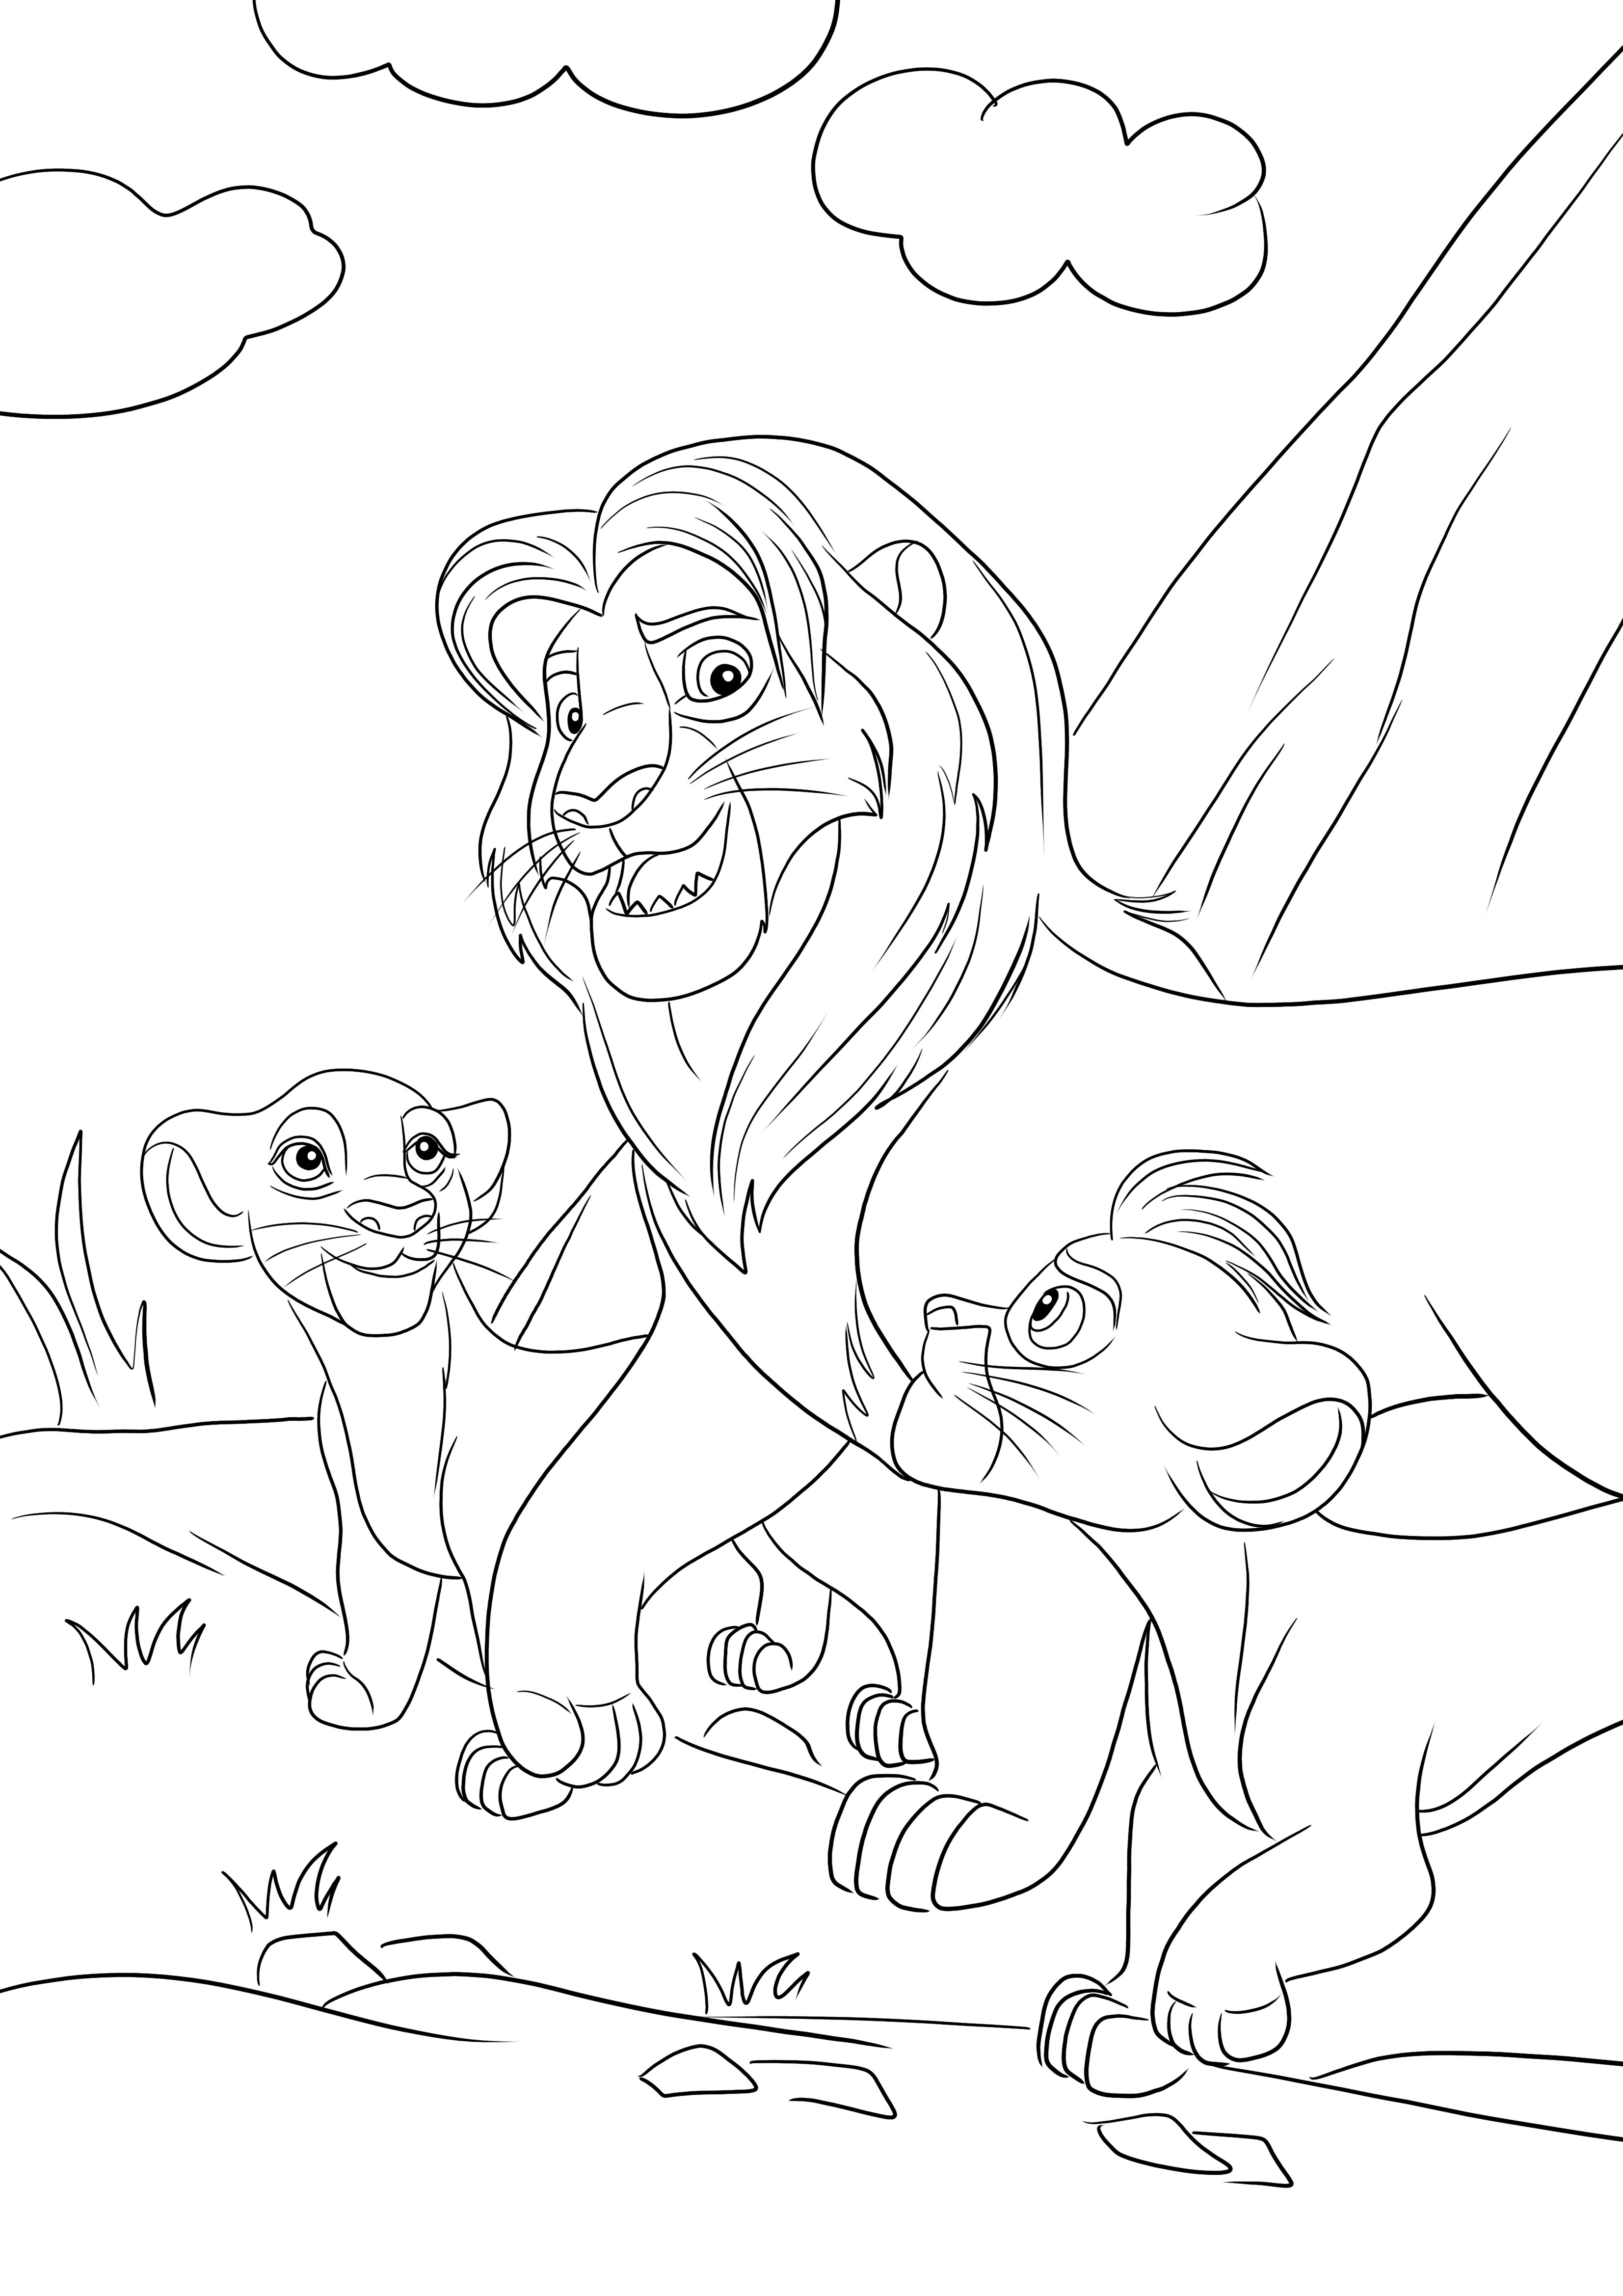 Coloração gratuita de Simba e seus dois filhos-Kiara e Kion para baixar e colorir